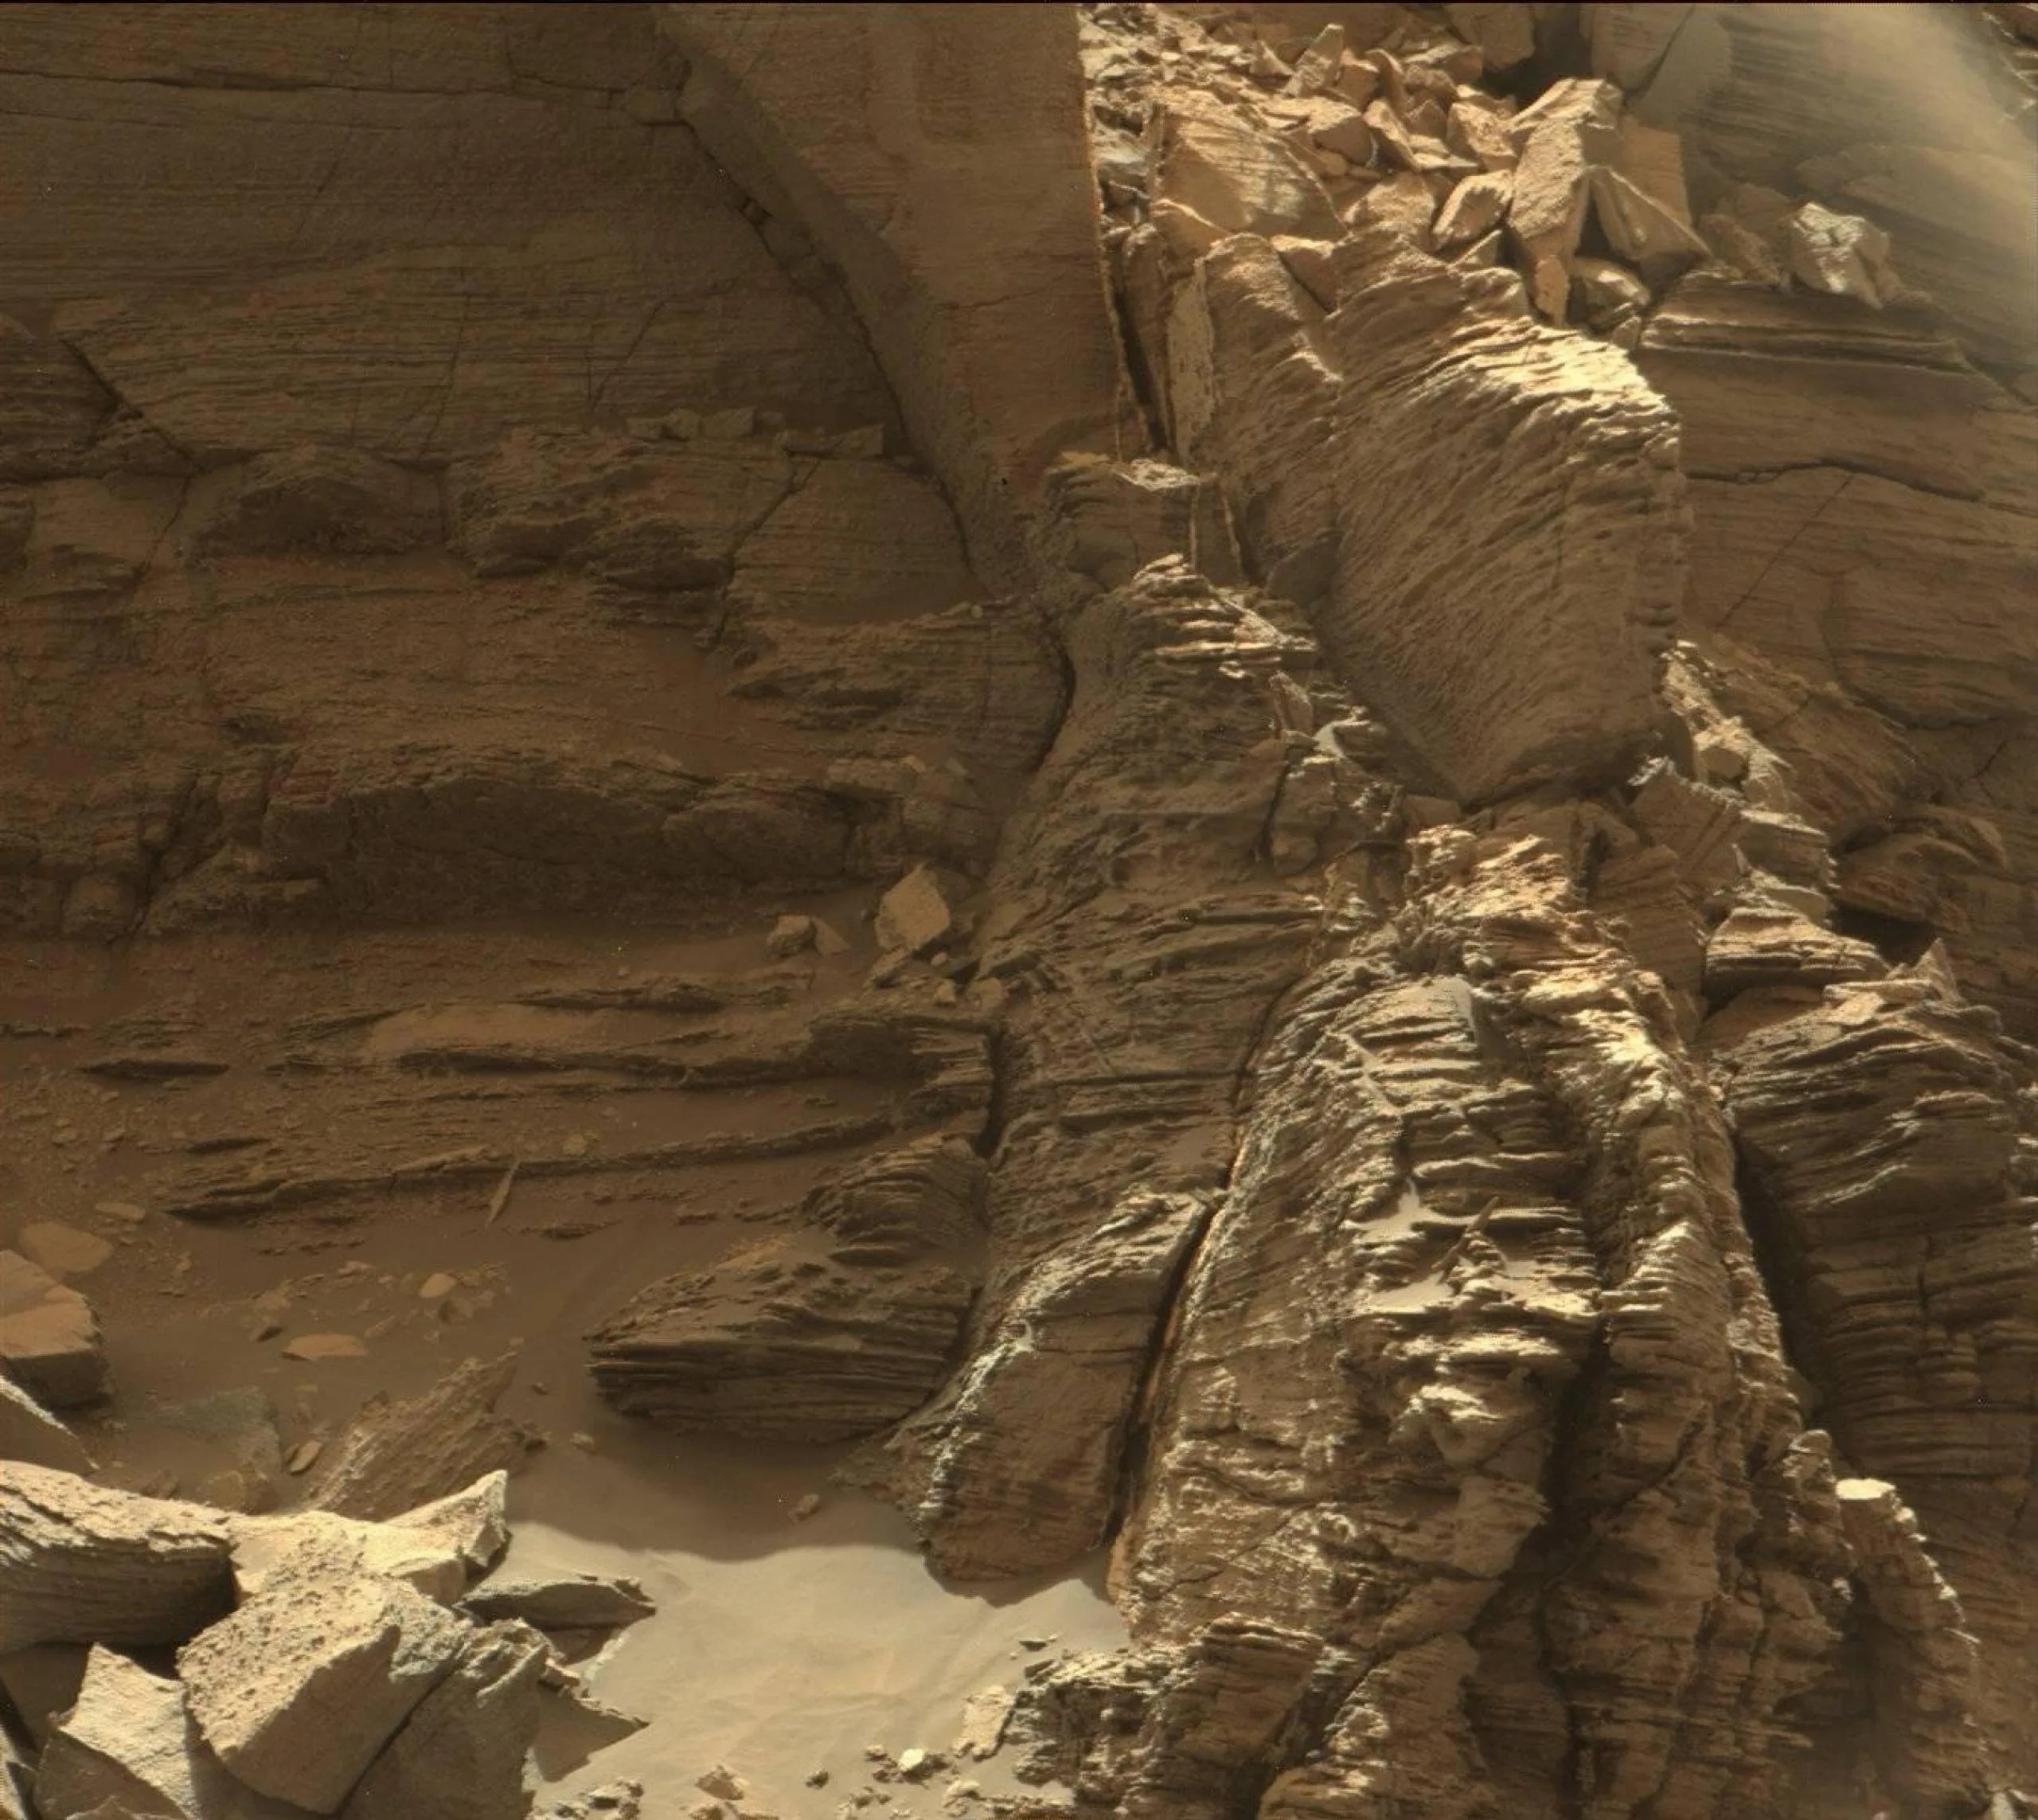 El rover Curiosity Mars de la NASA usó su Mast Camera, o Mastcam, para capturar esta imagen de un afloramiento con rocas finamente estratificadas dentro de la región de